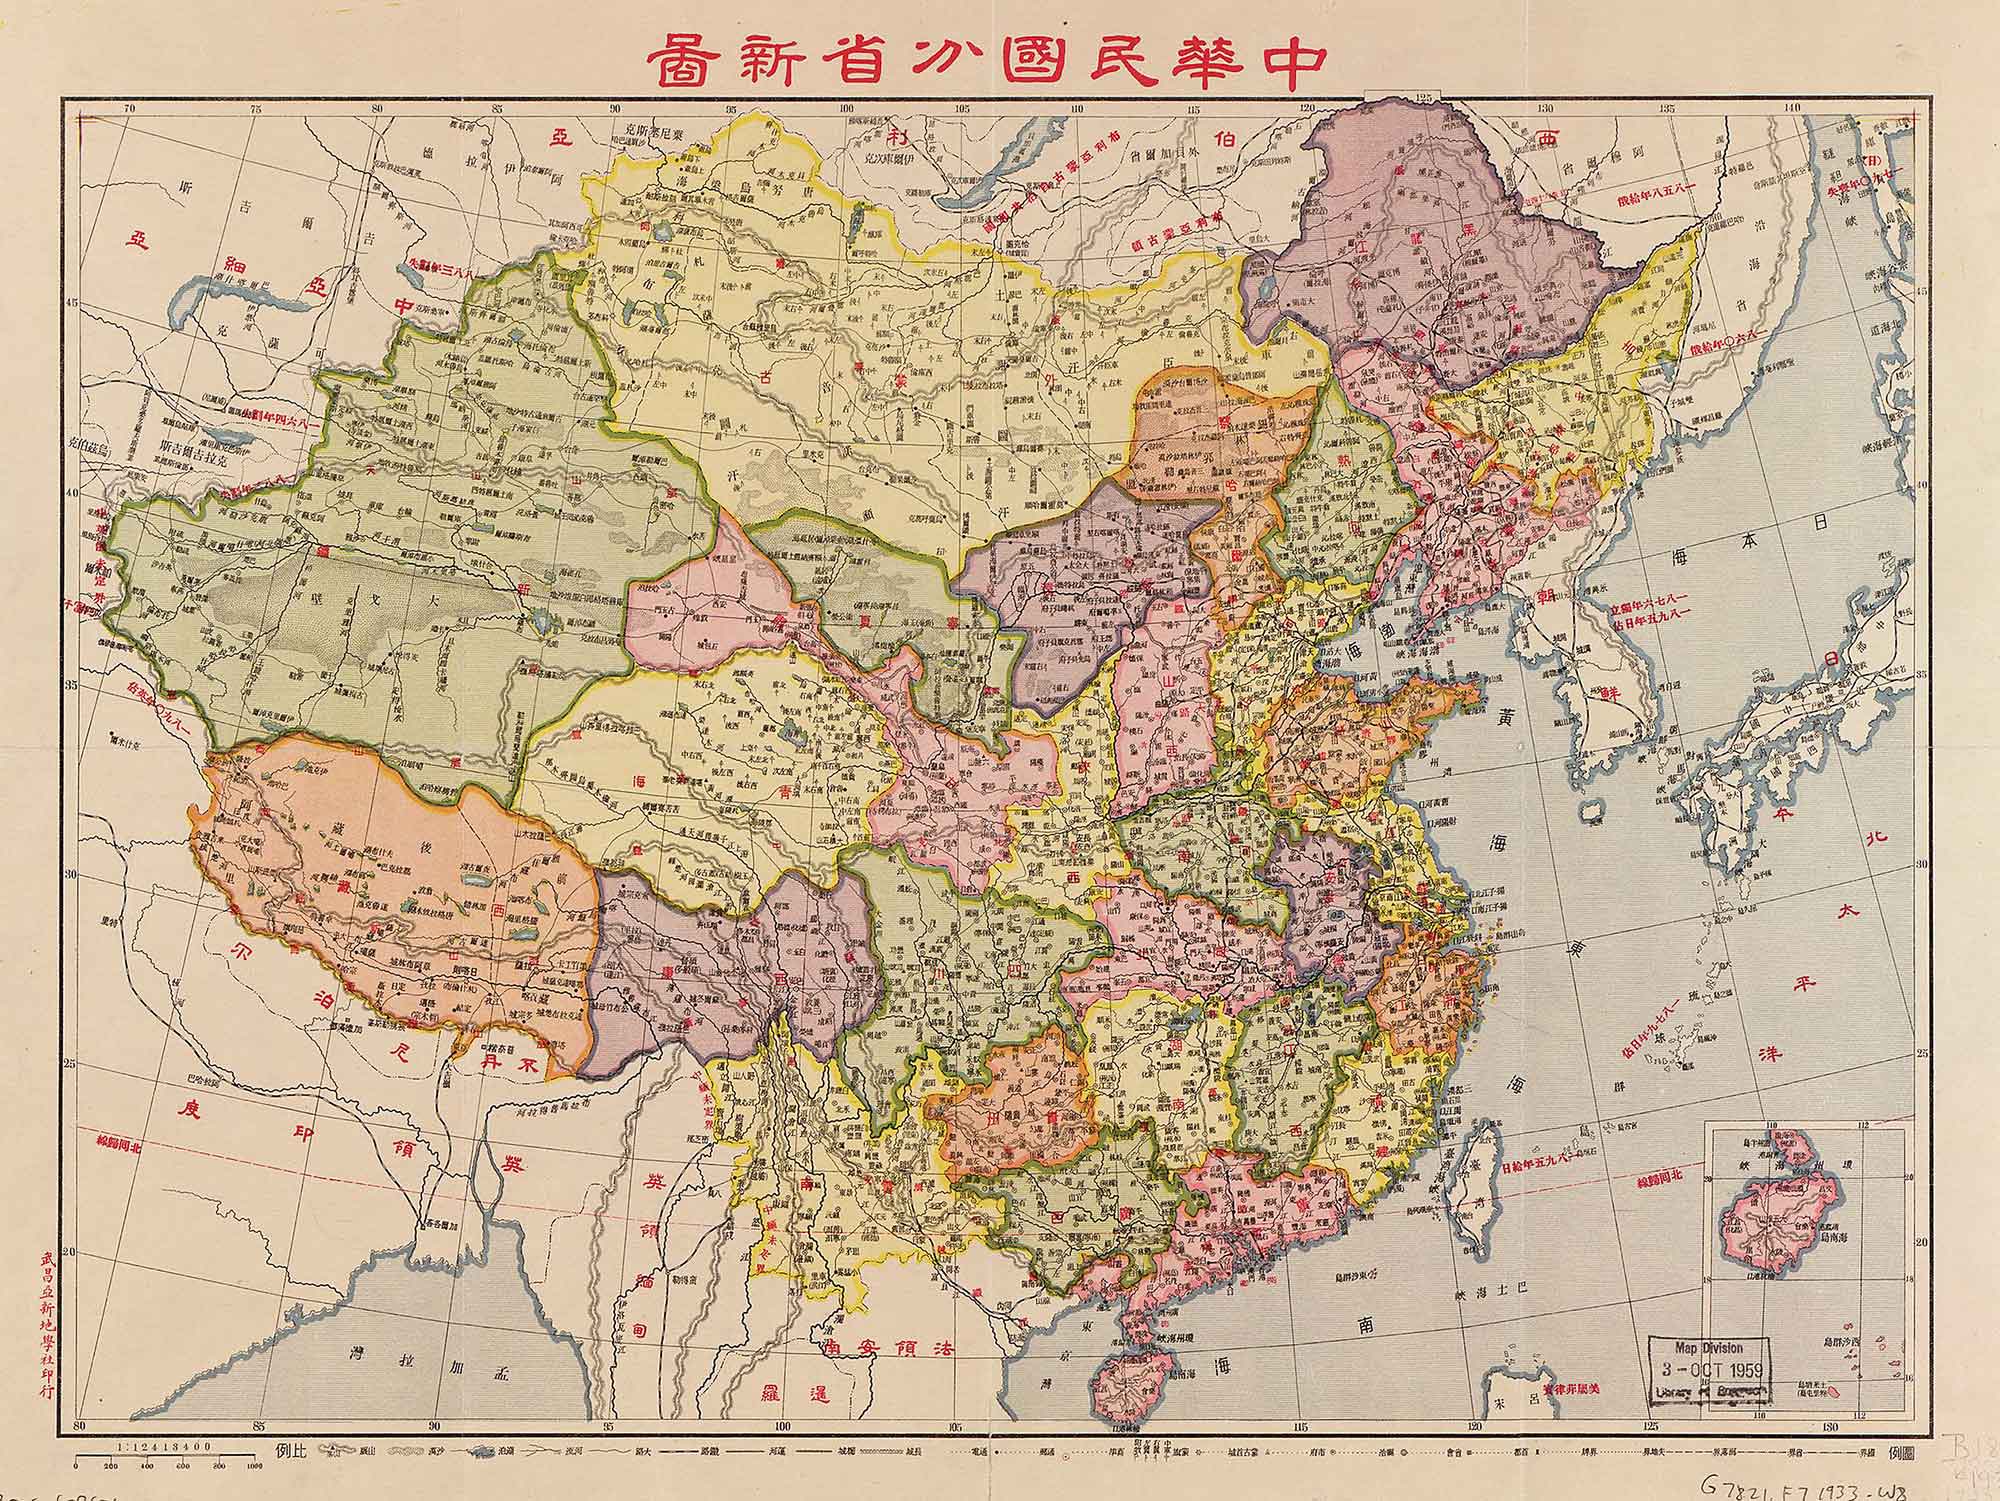 China Historical Map (1930)